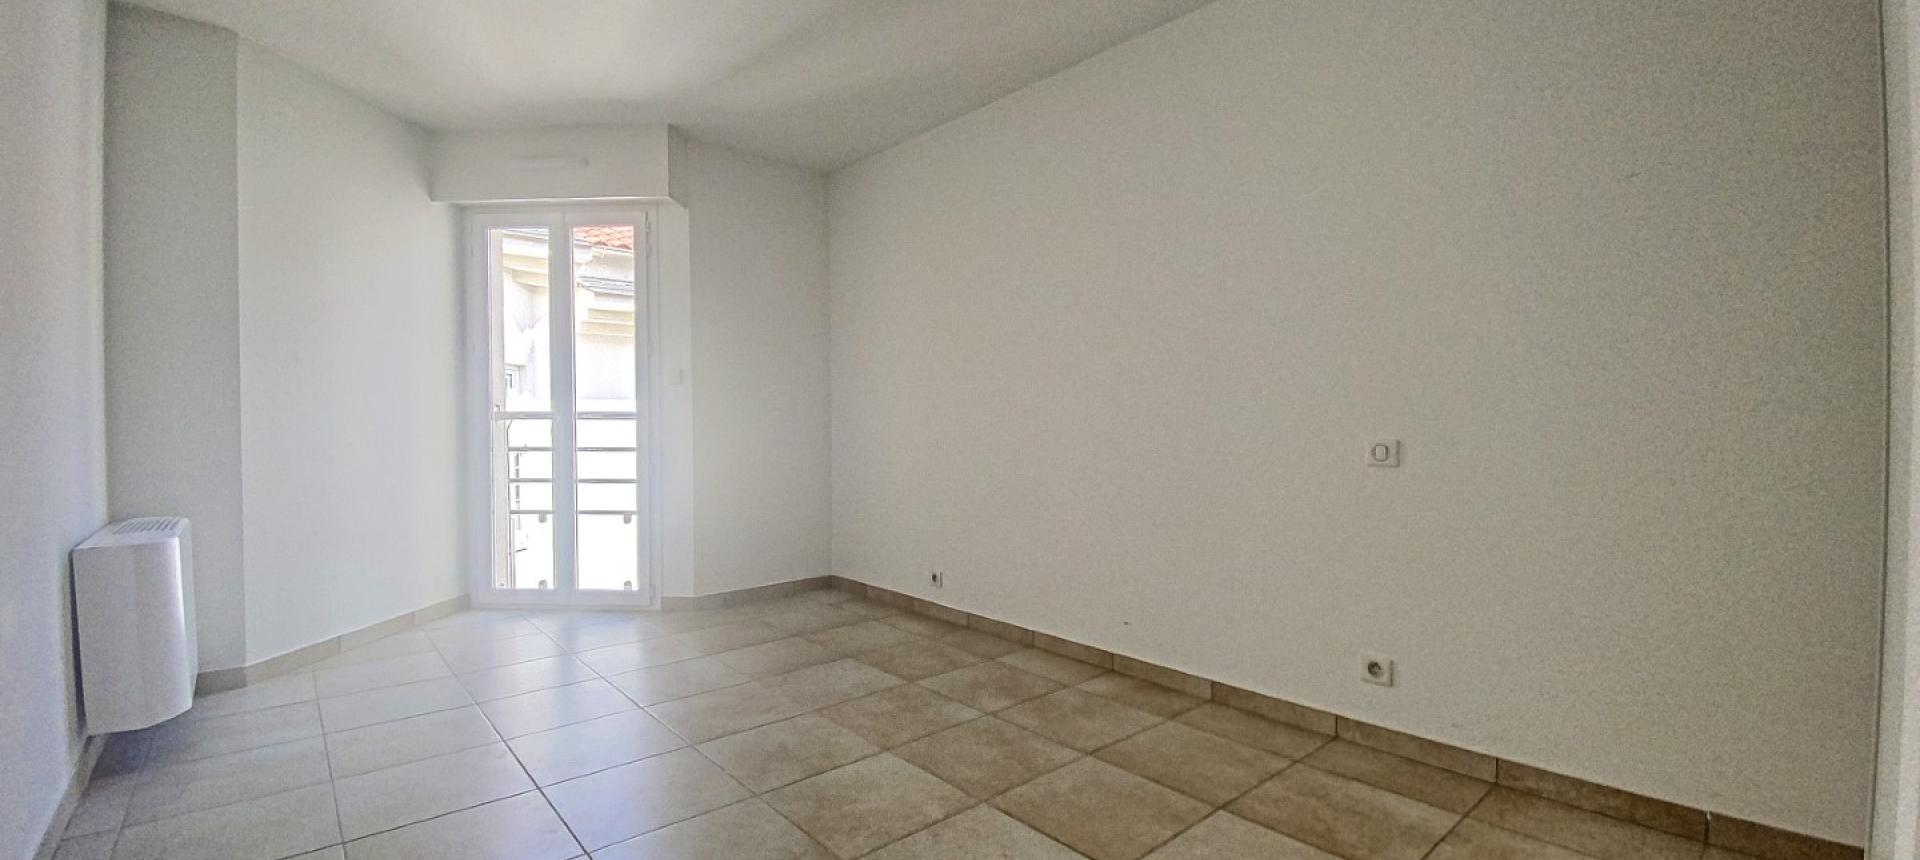 A vendre, un appartement T5 Duplex récent de standing cours Napoléon - Ajaccio